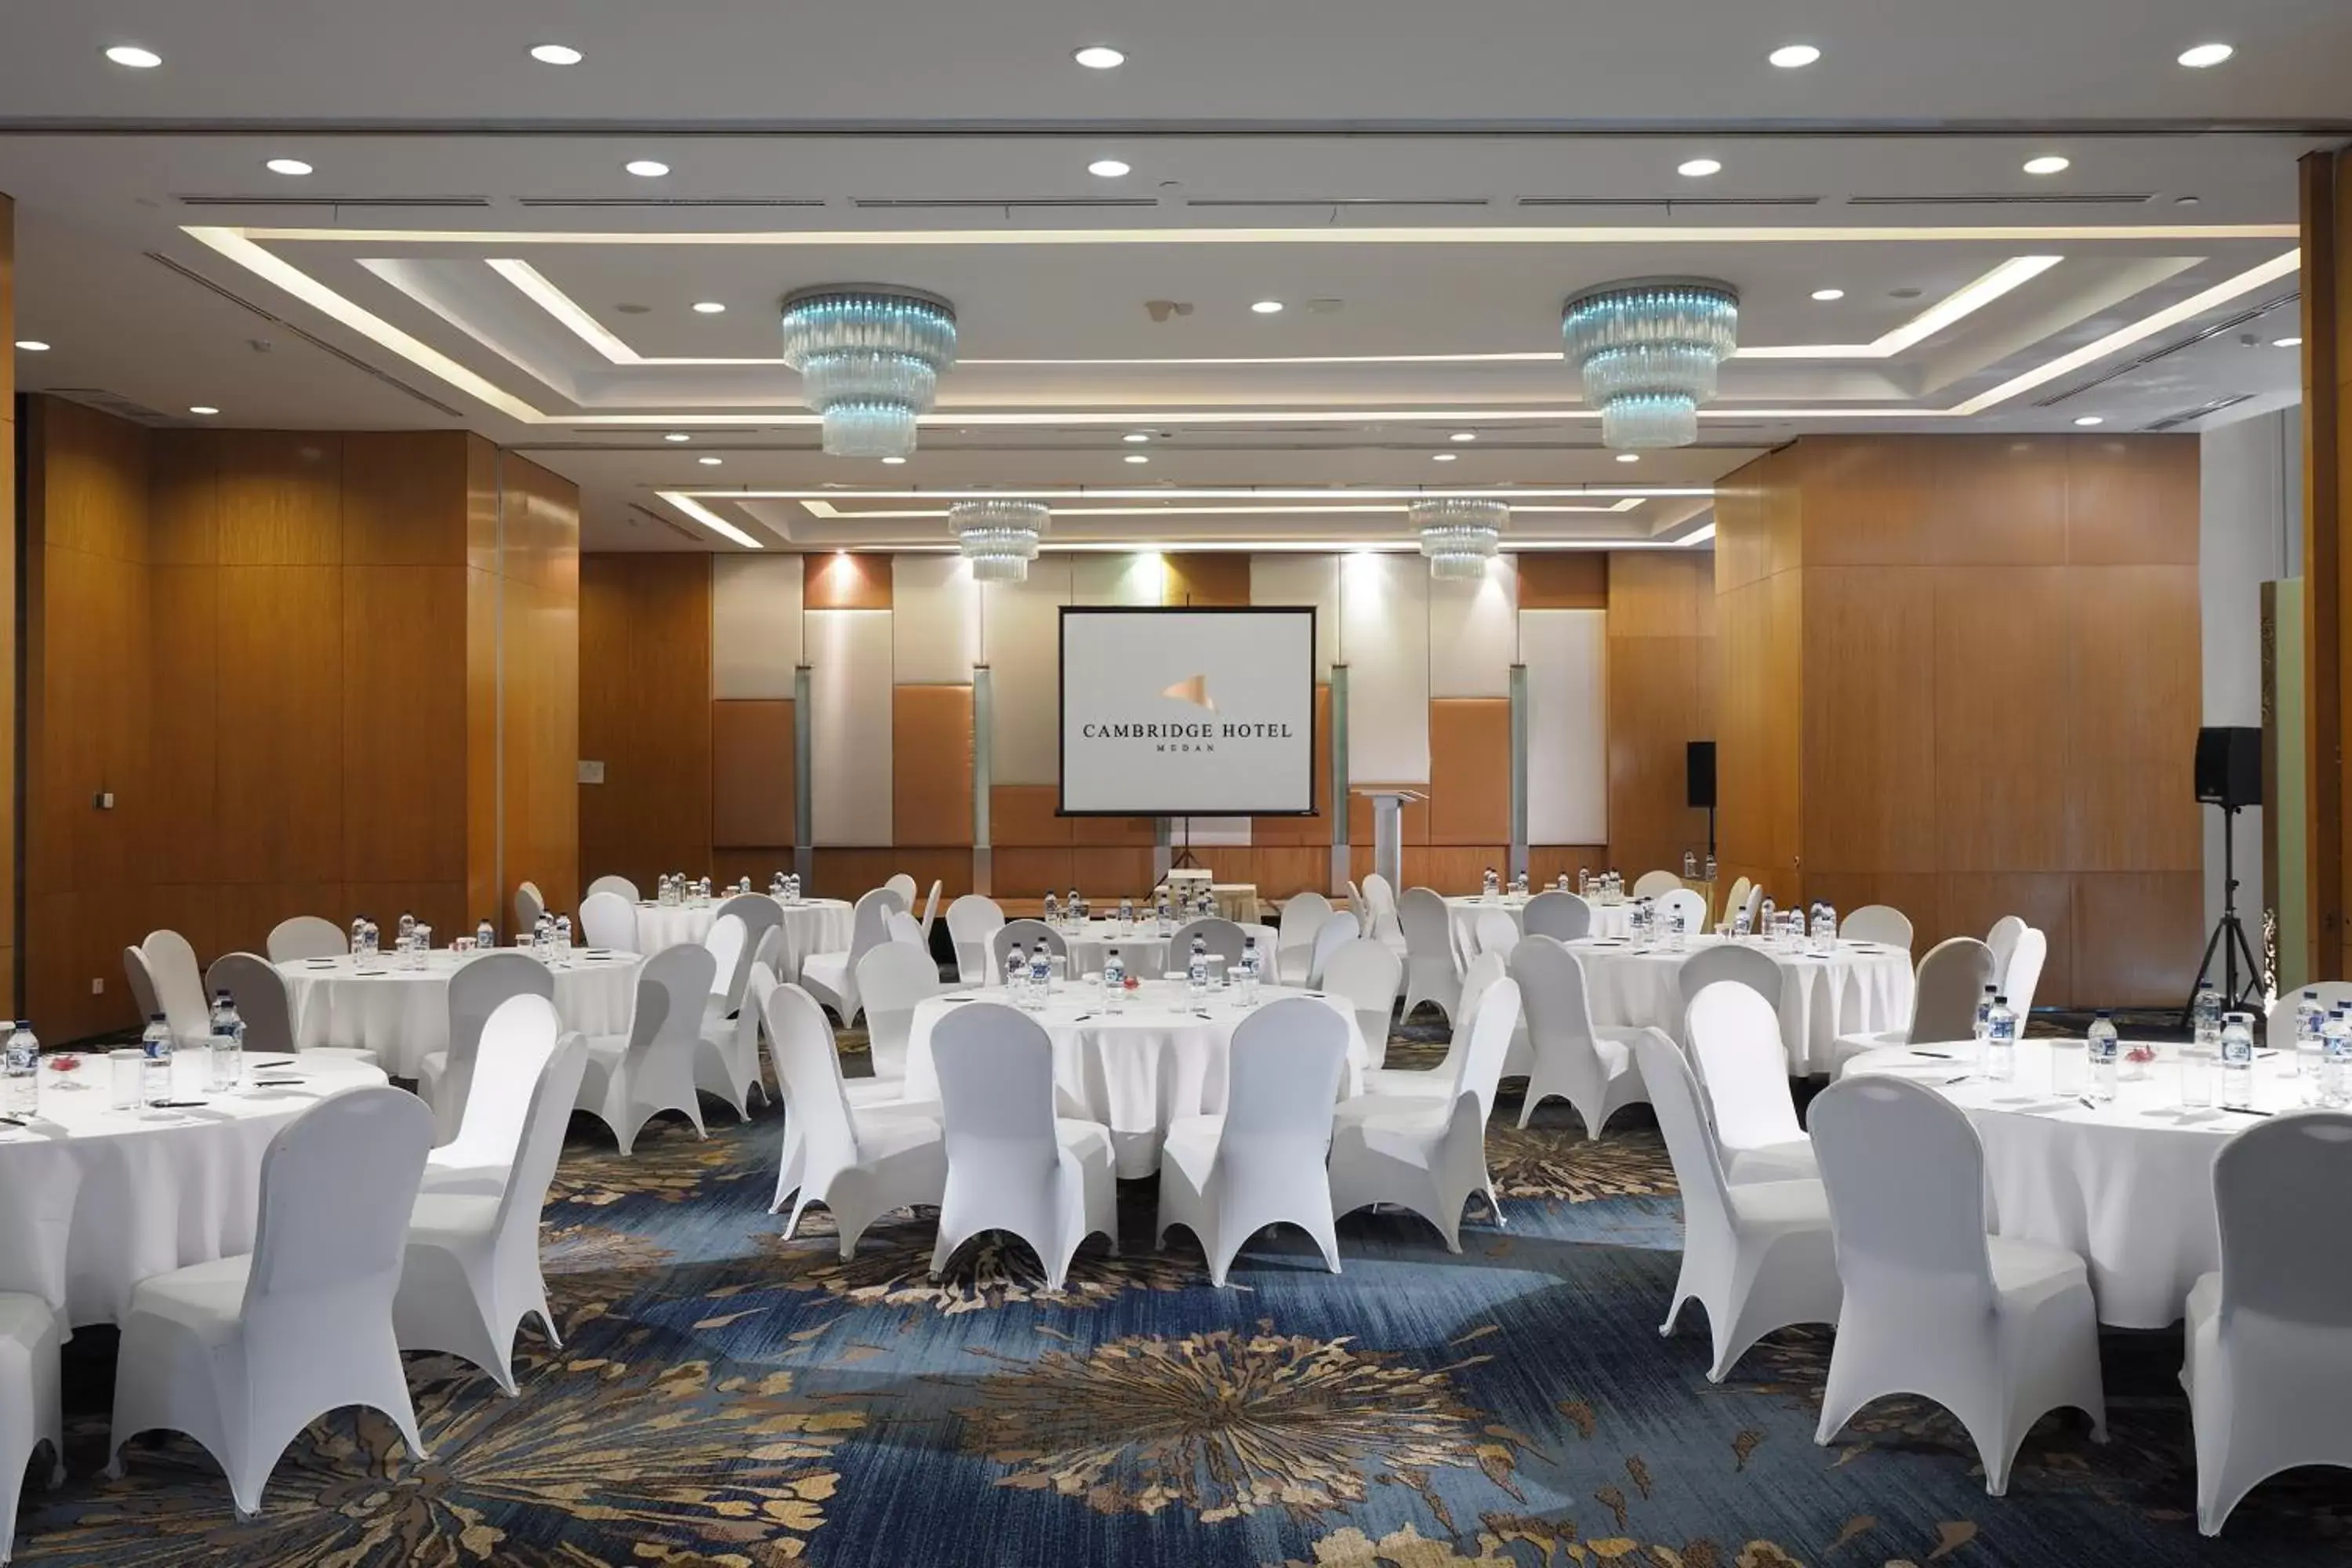 Banquet/Function facilities, Banquet Facilities in Cambridge Hotel Medan